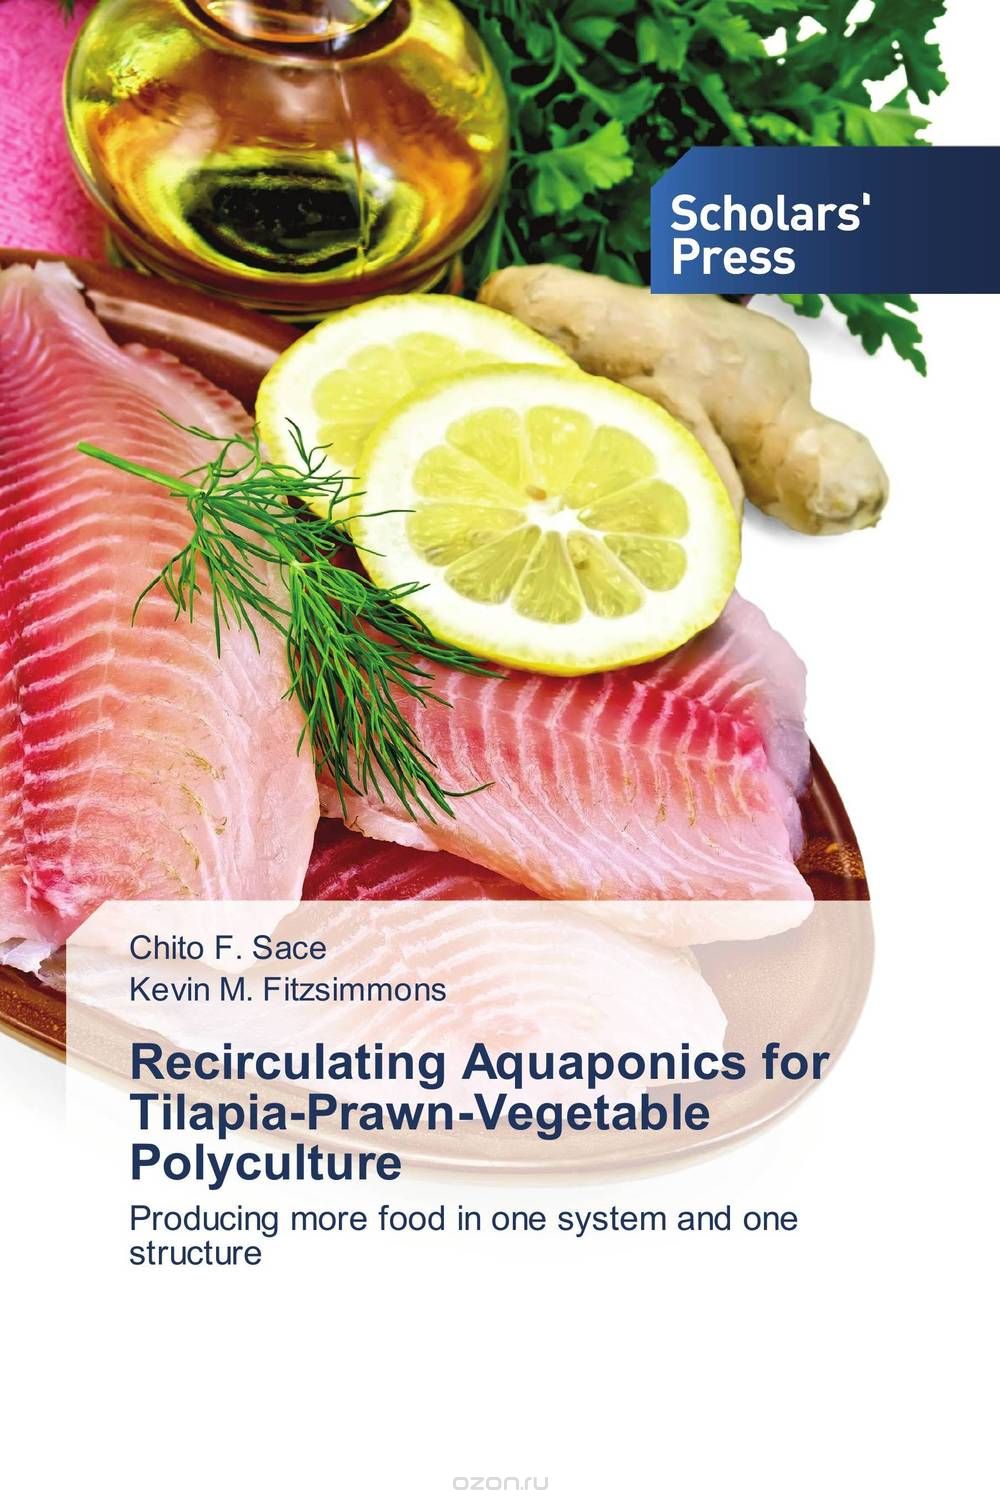 Скачать книгу "Recirculating Aquaponics for Tilapia-Prawn-Vegetable Polyculture"